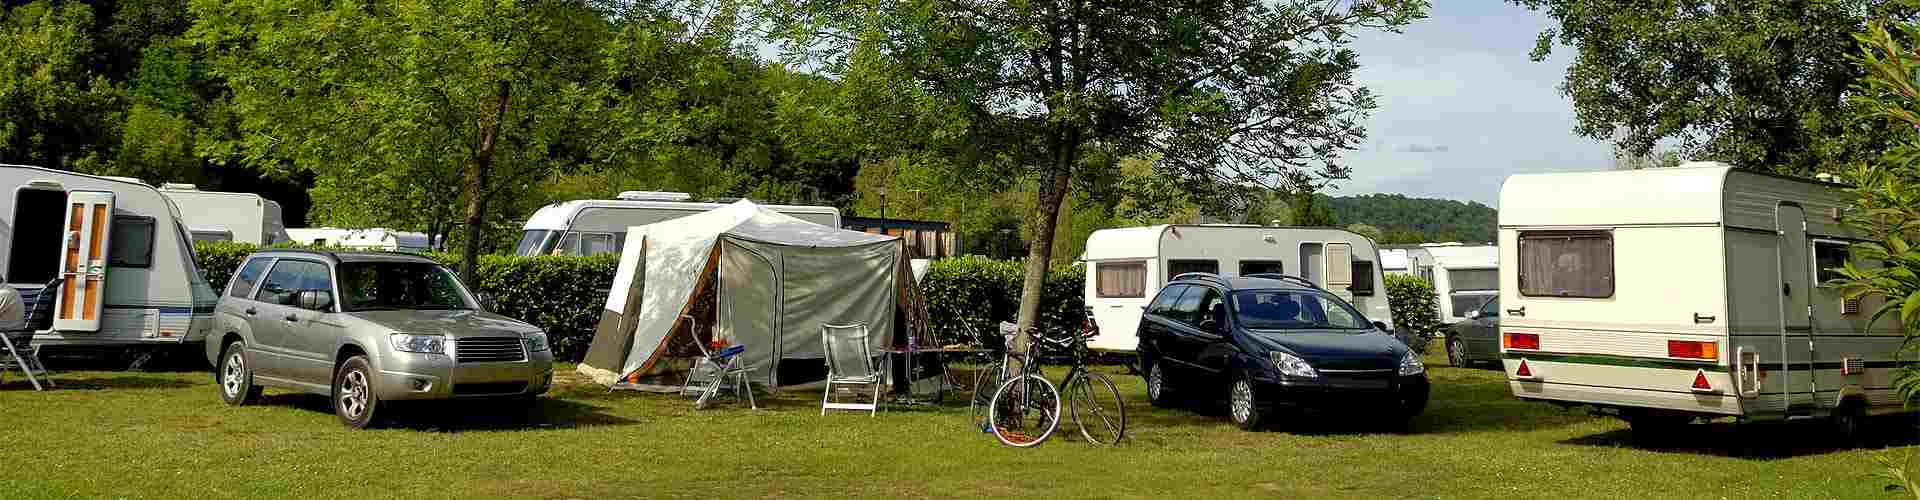 Campings y bungalows en Sosas del Cumbral